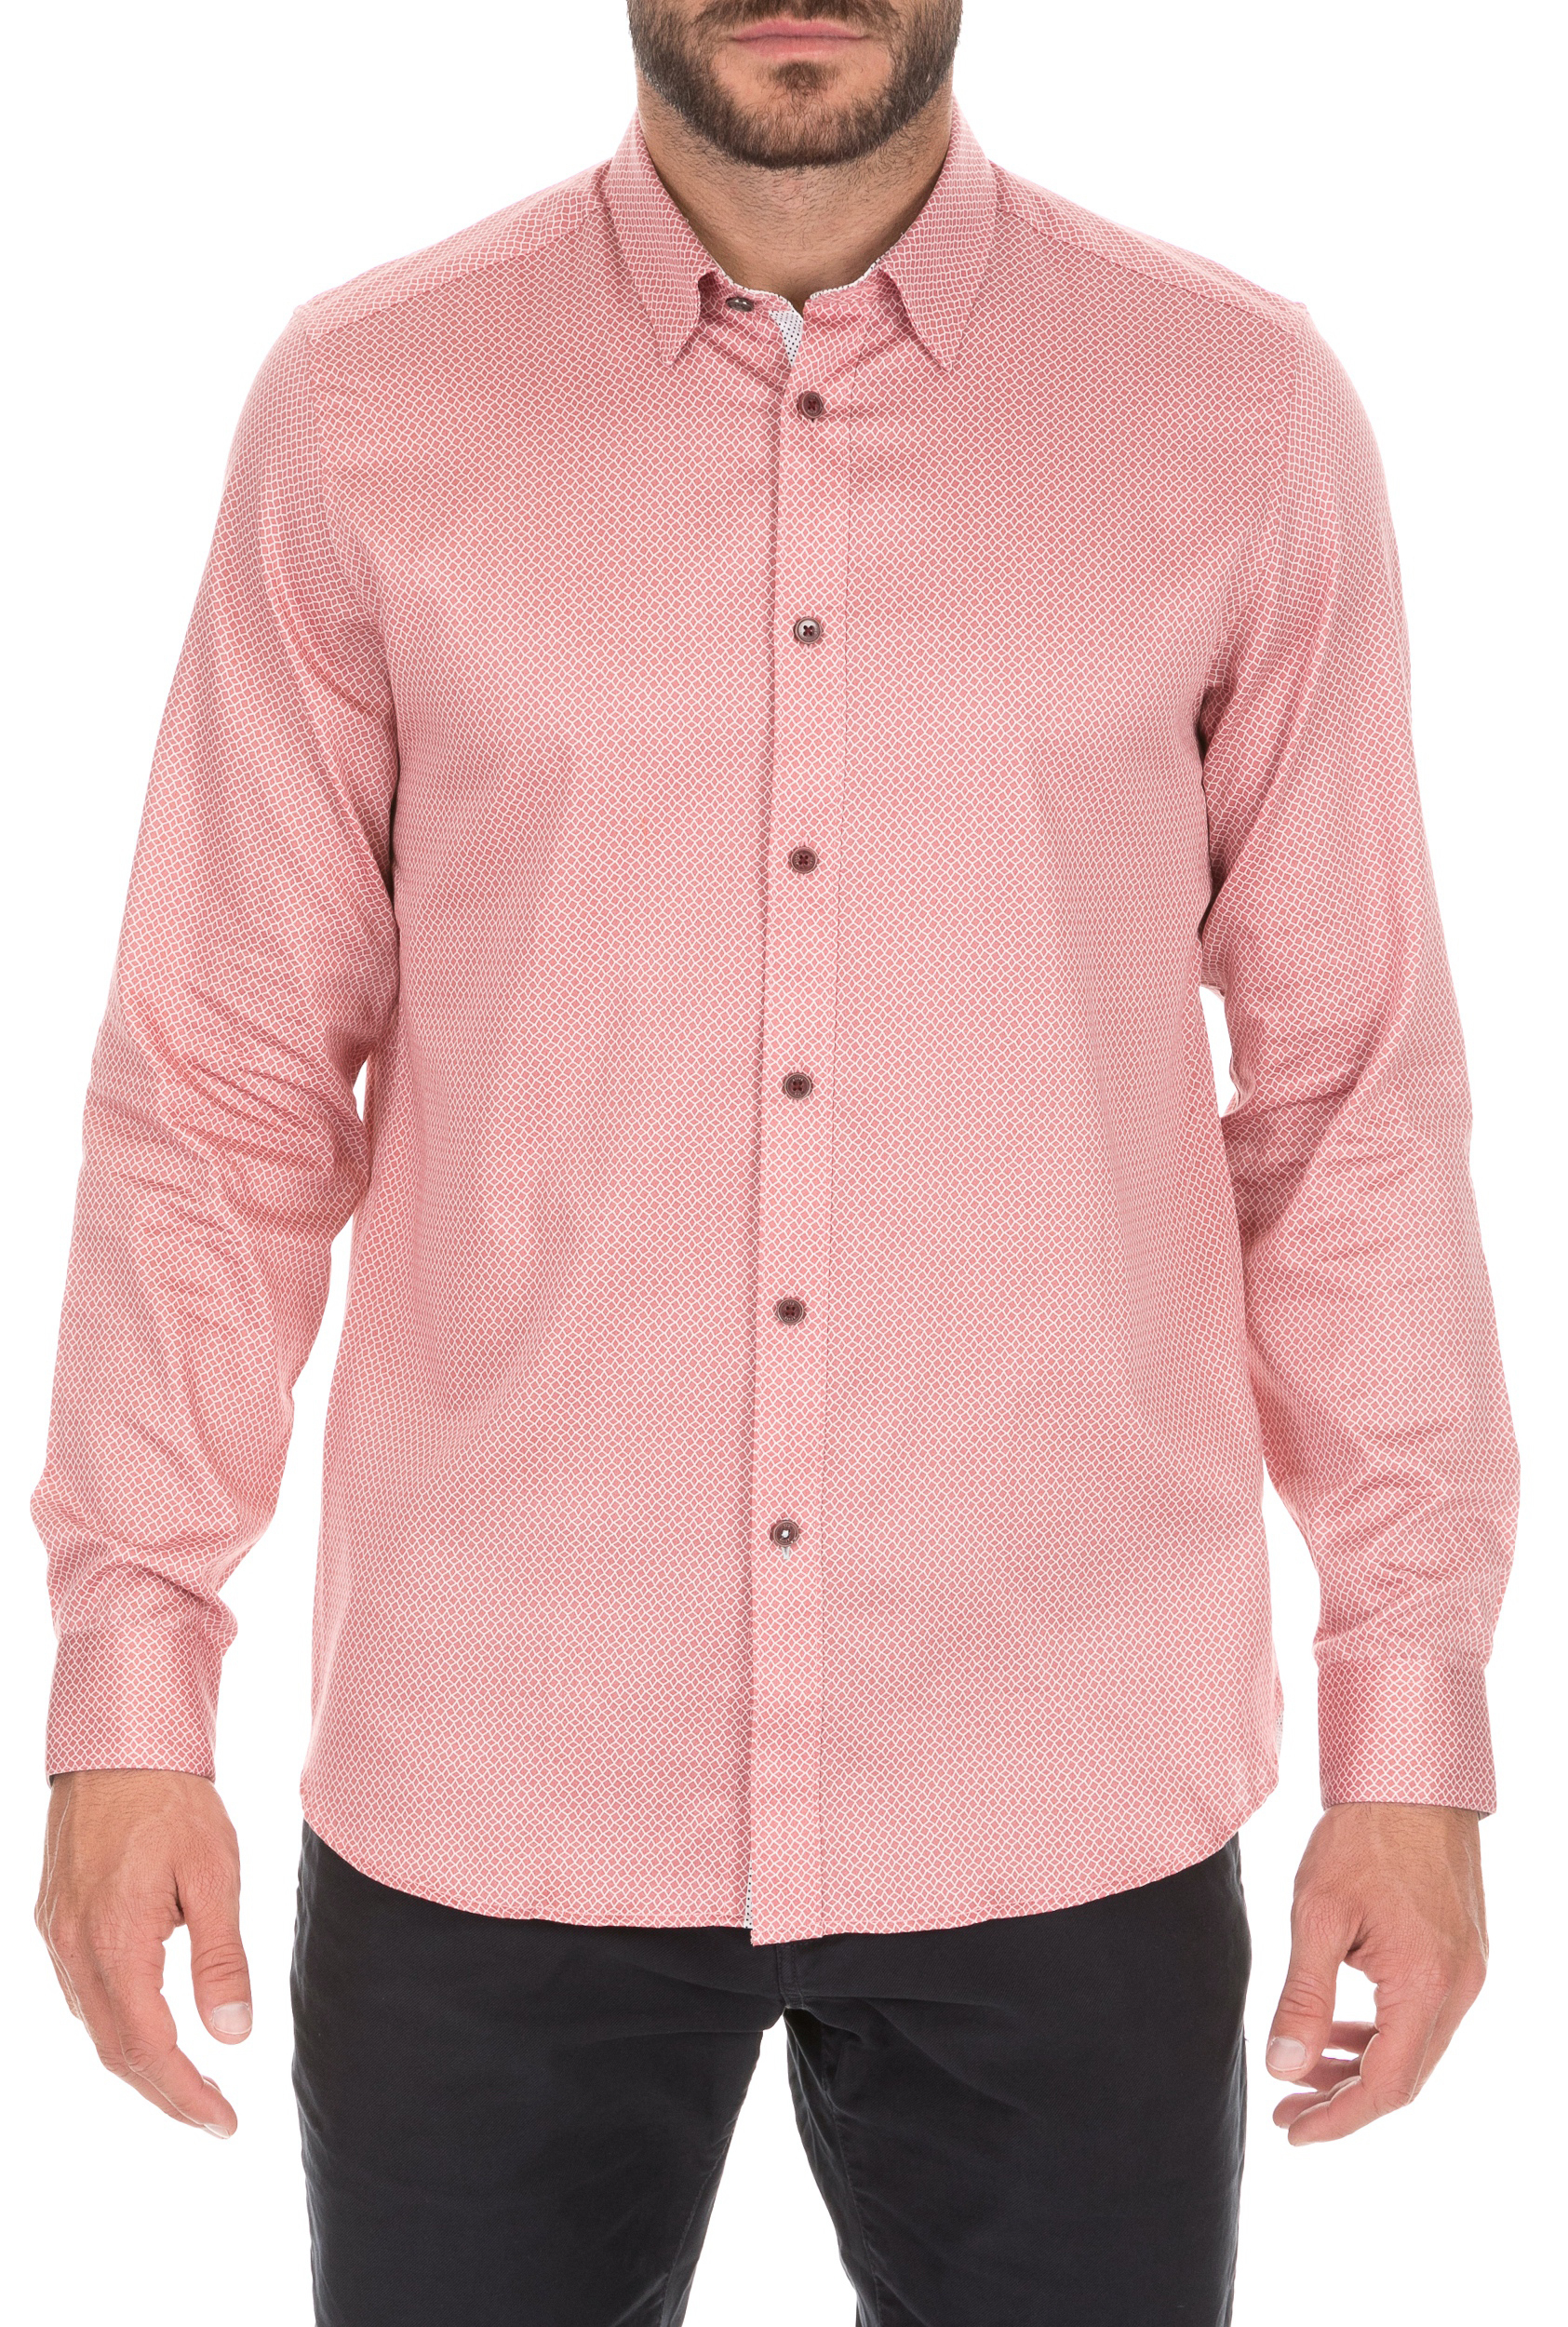 TED BAKER Ανδρικό πουκάμισο TED BAKER BRADLEY ροζ